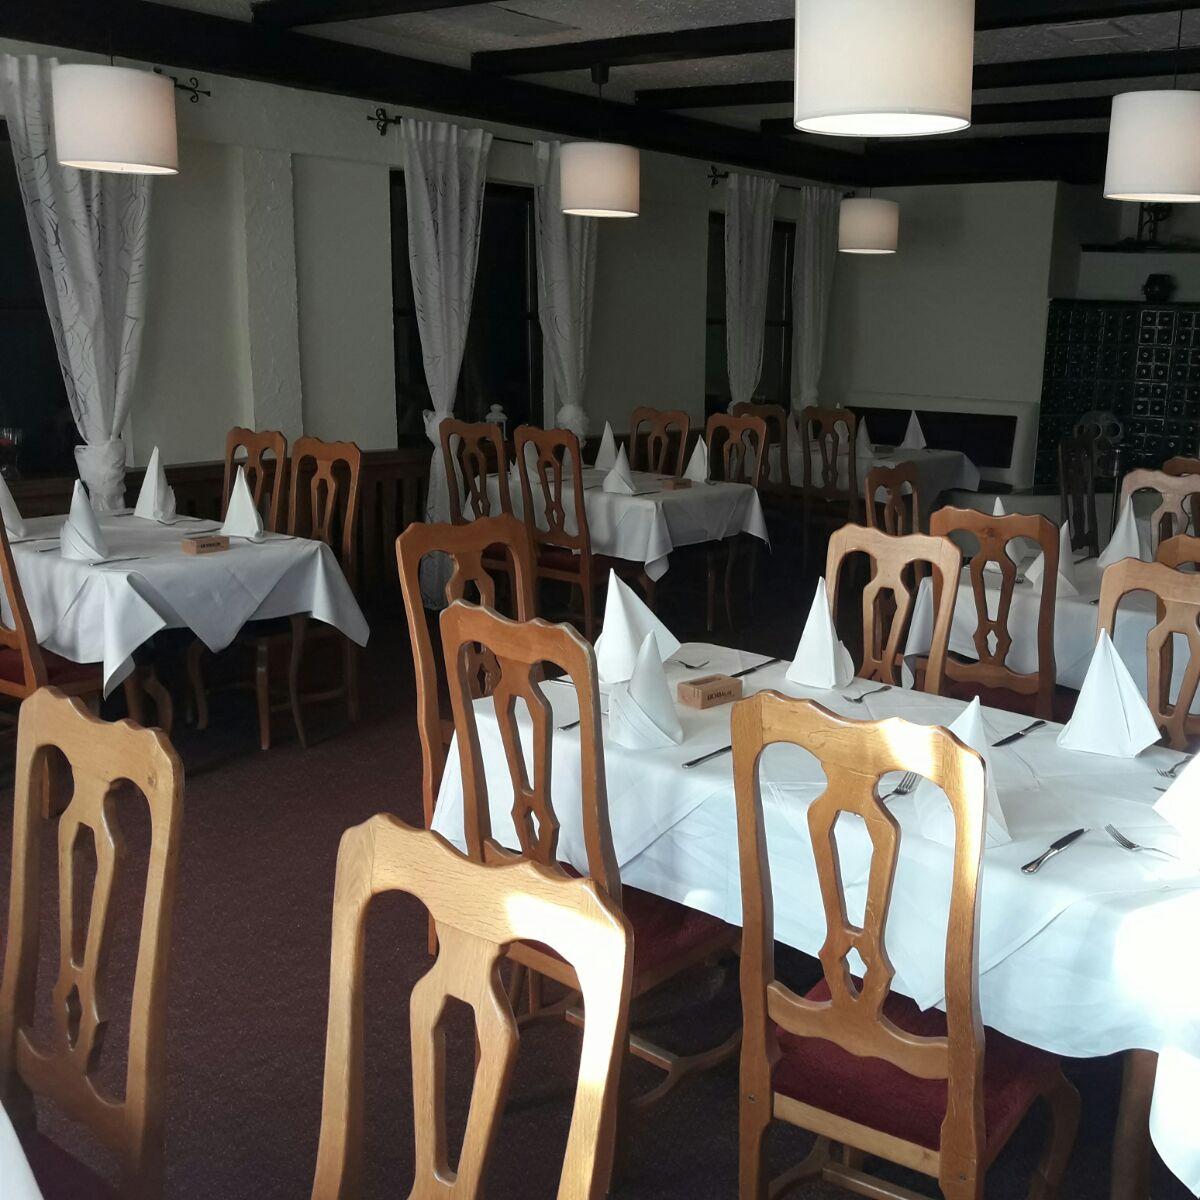 Restaurant "Ristorante Mirabelle im Palatia" in Schifferstadt